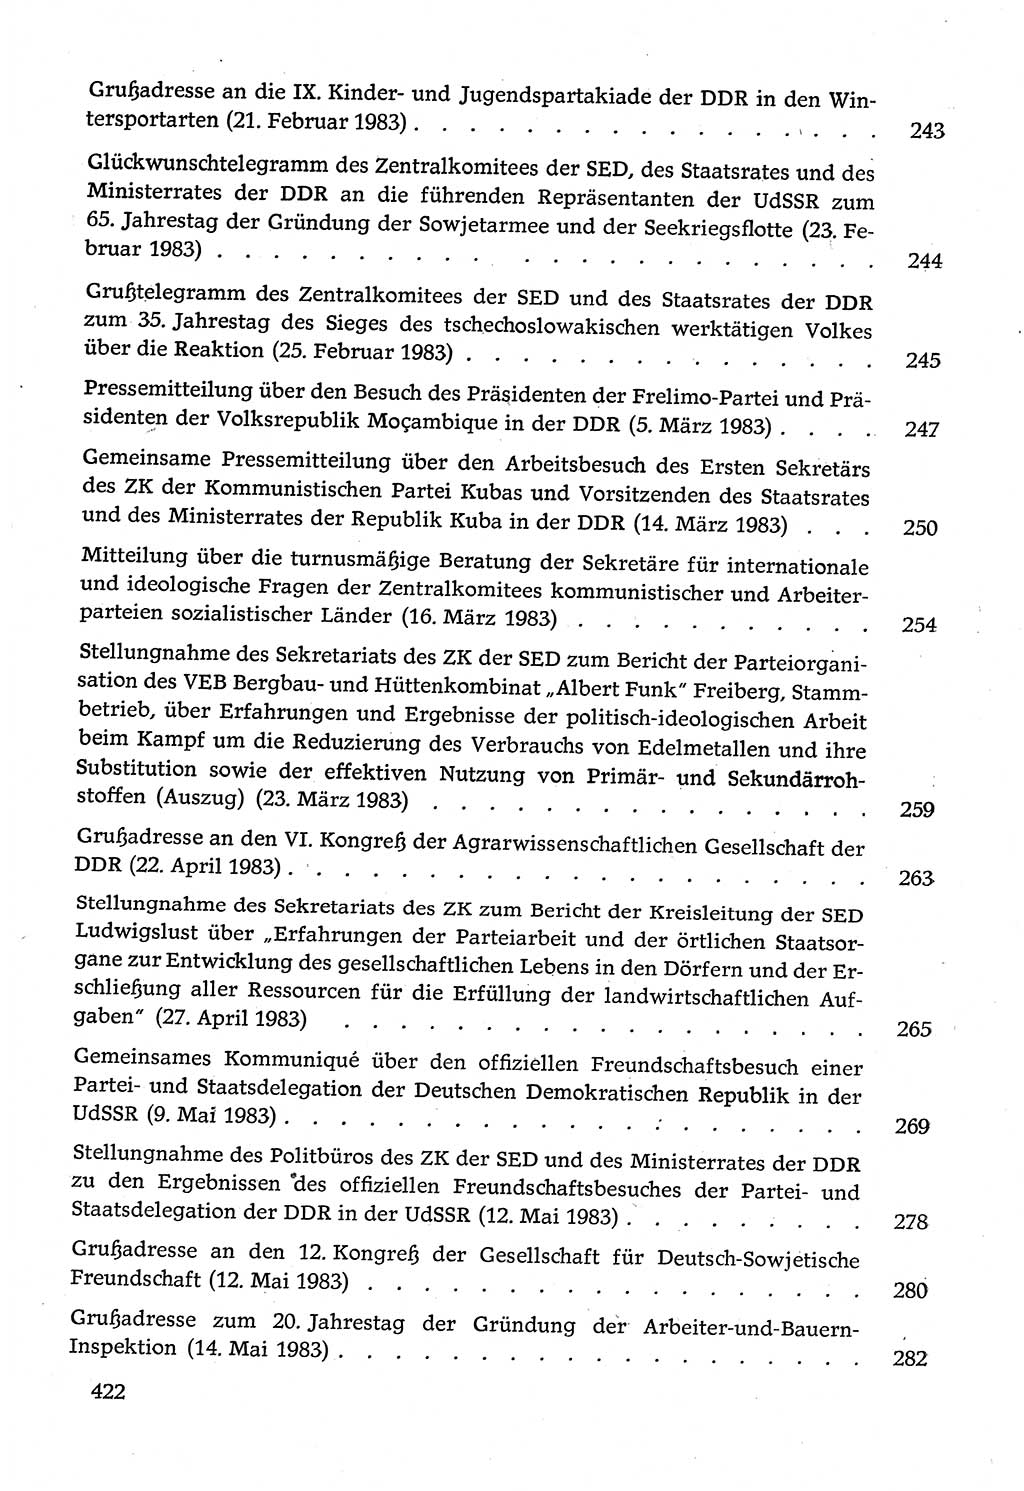 Dokumente der Sozialistischen Einheitspartei Deutschlands (SED) [Deutsche Demokratische Republik (DDR)] 1982-1983, Seite 422 (Dok. SED DDR 1982-1983, S. 422)